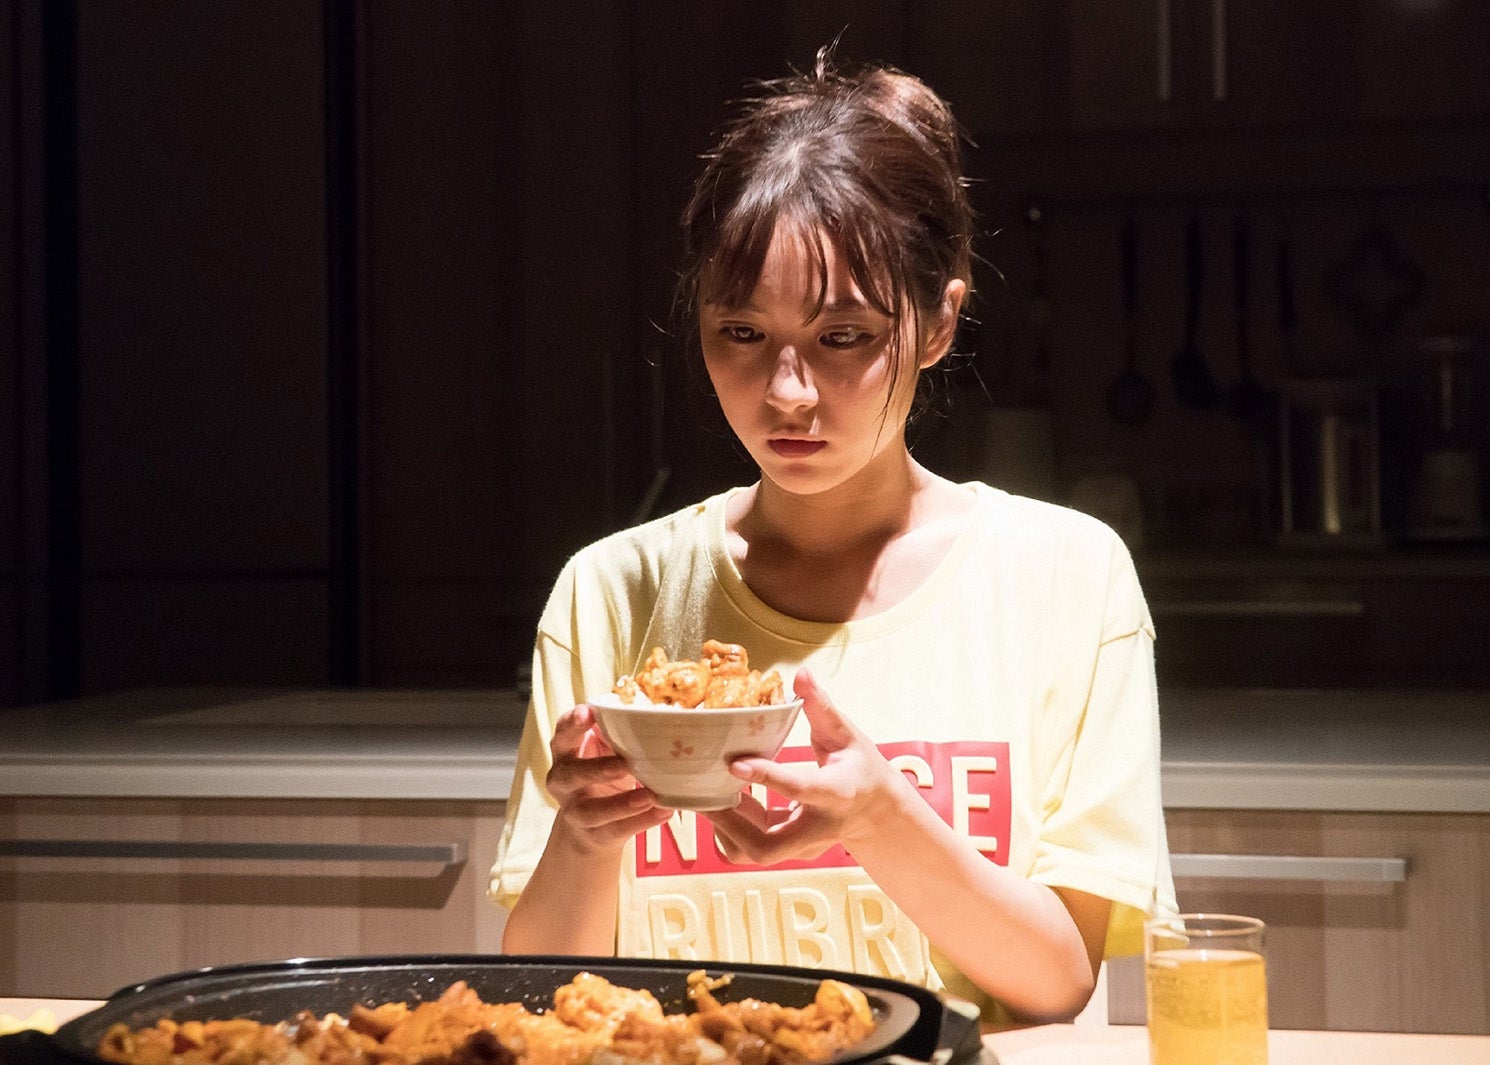 石川恋 初主演ドラマでトップモデルに 役作りで食事制限も 背徳の夜食 モデルプレス